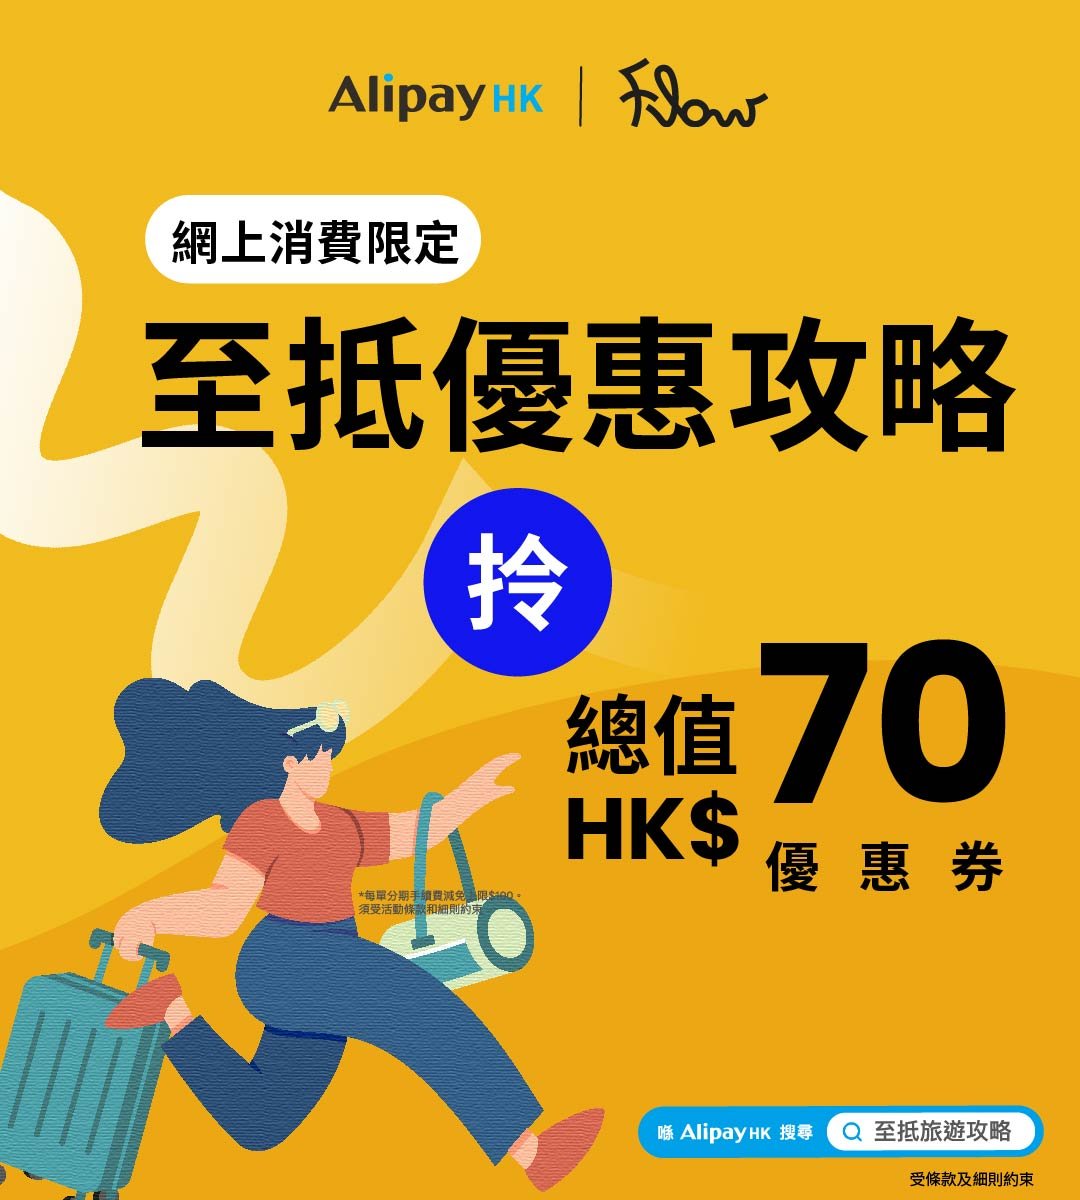 AlipayHK 至抵獎賞: 即領總值HK$70 優惠禮券